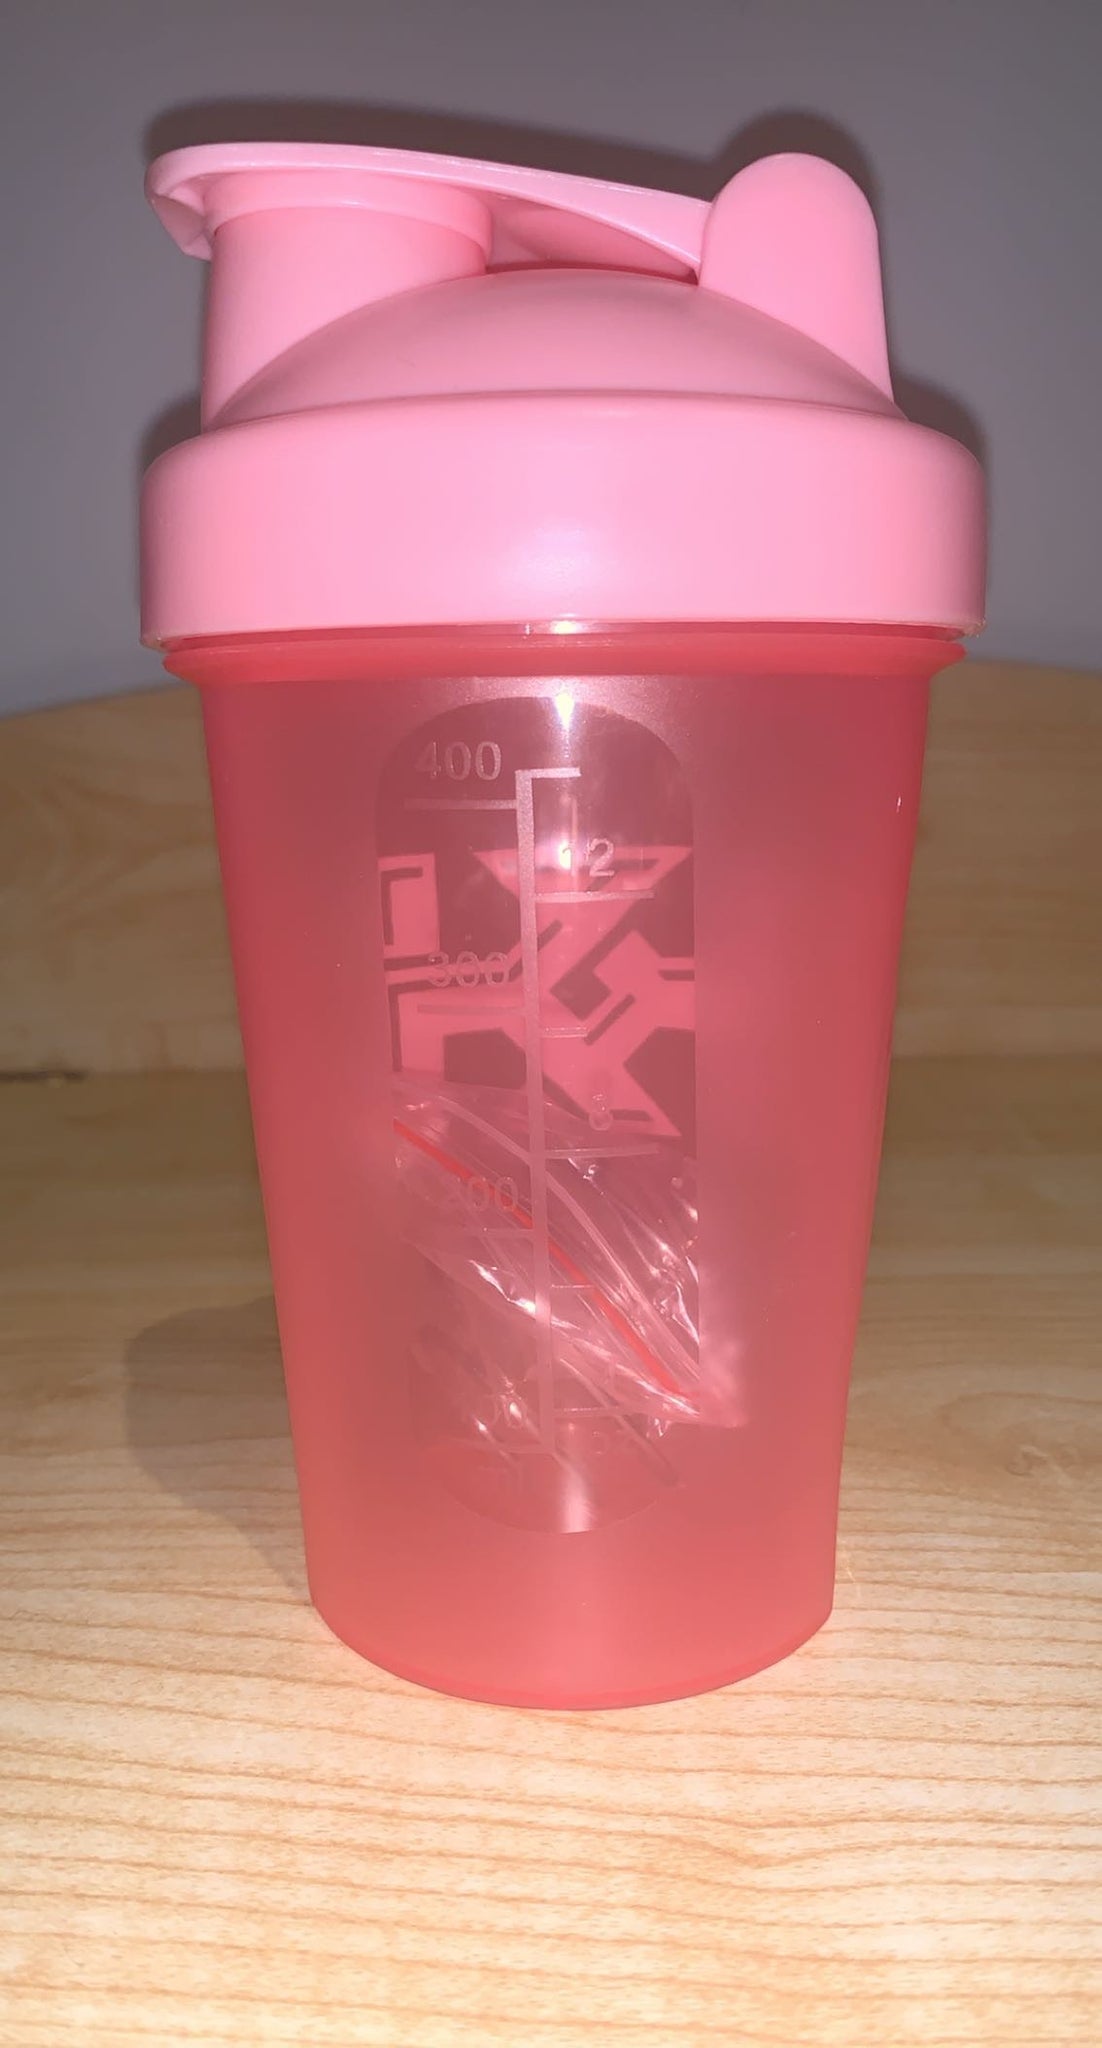 KK Blender Bottle - Pink, Purple or Blue – Karved Kurves